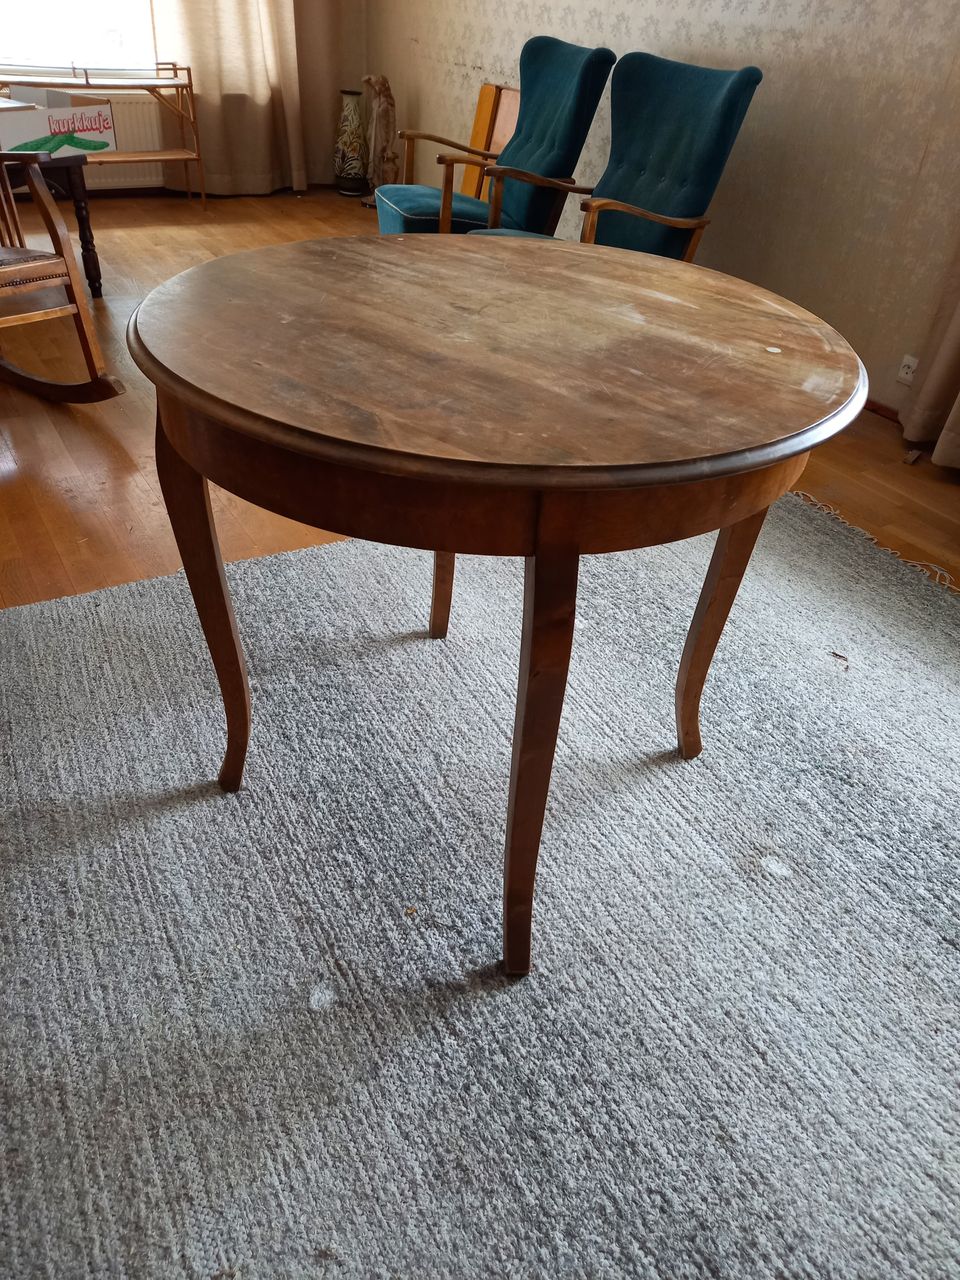 Vanha pyöreä pöytä